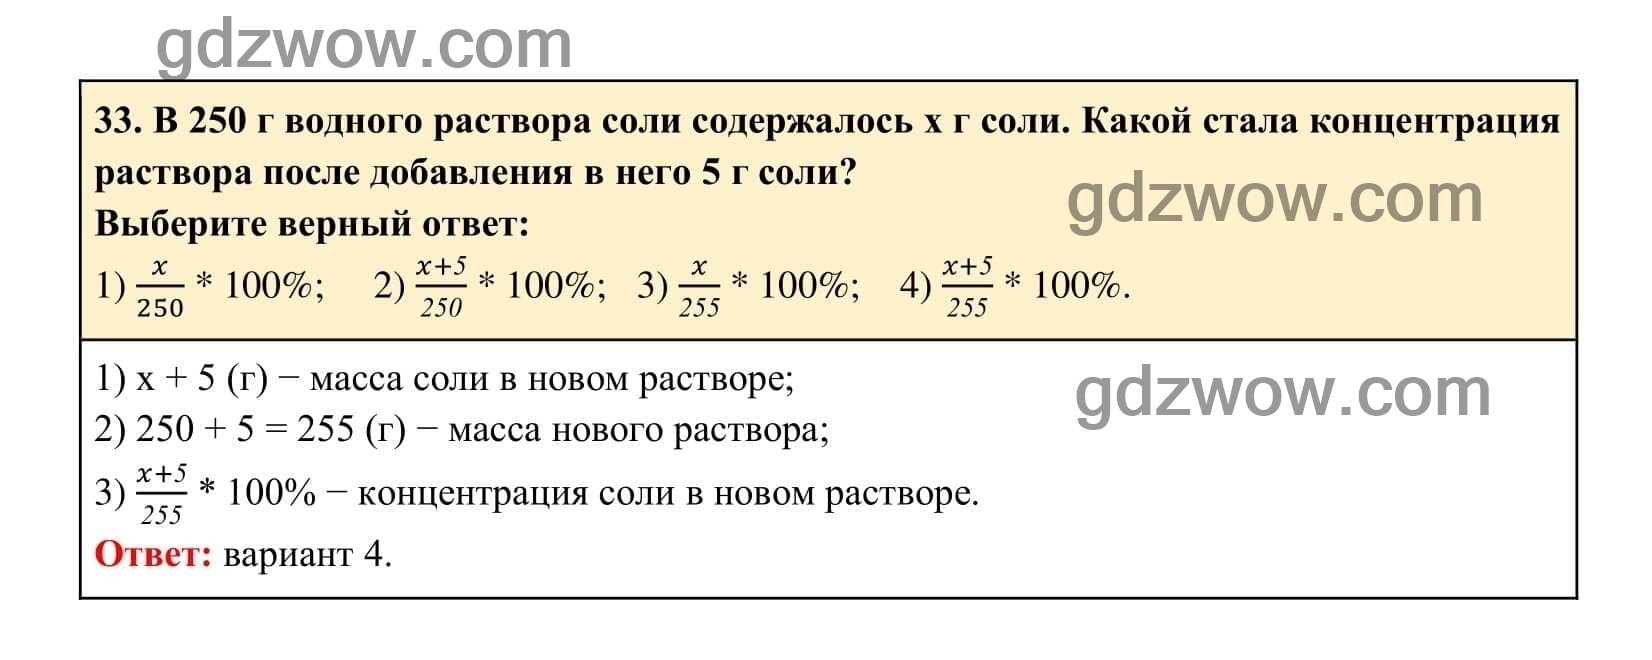 Упражнение 33 - ГДЗ по Алгебре 7 класс Учебник Макарычев (решебник) - GDZwow